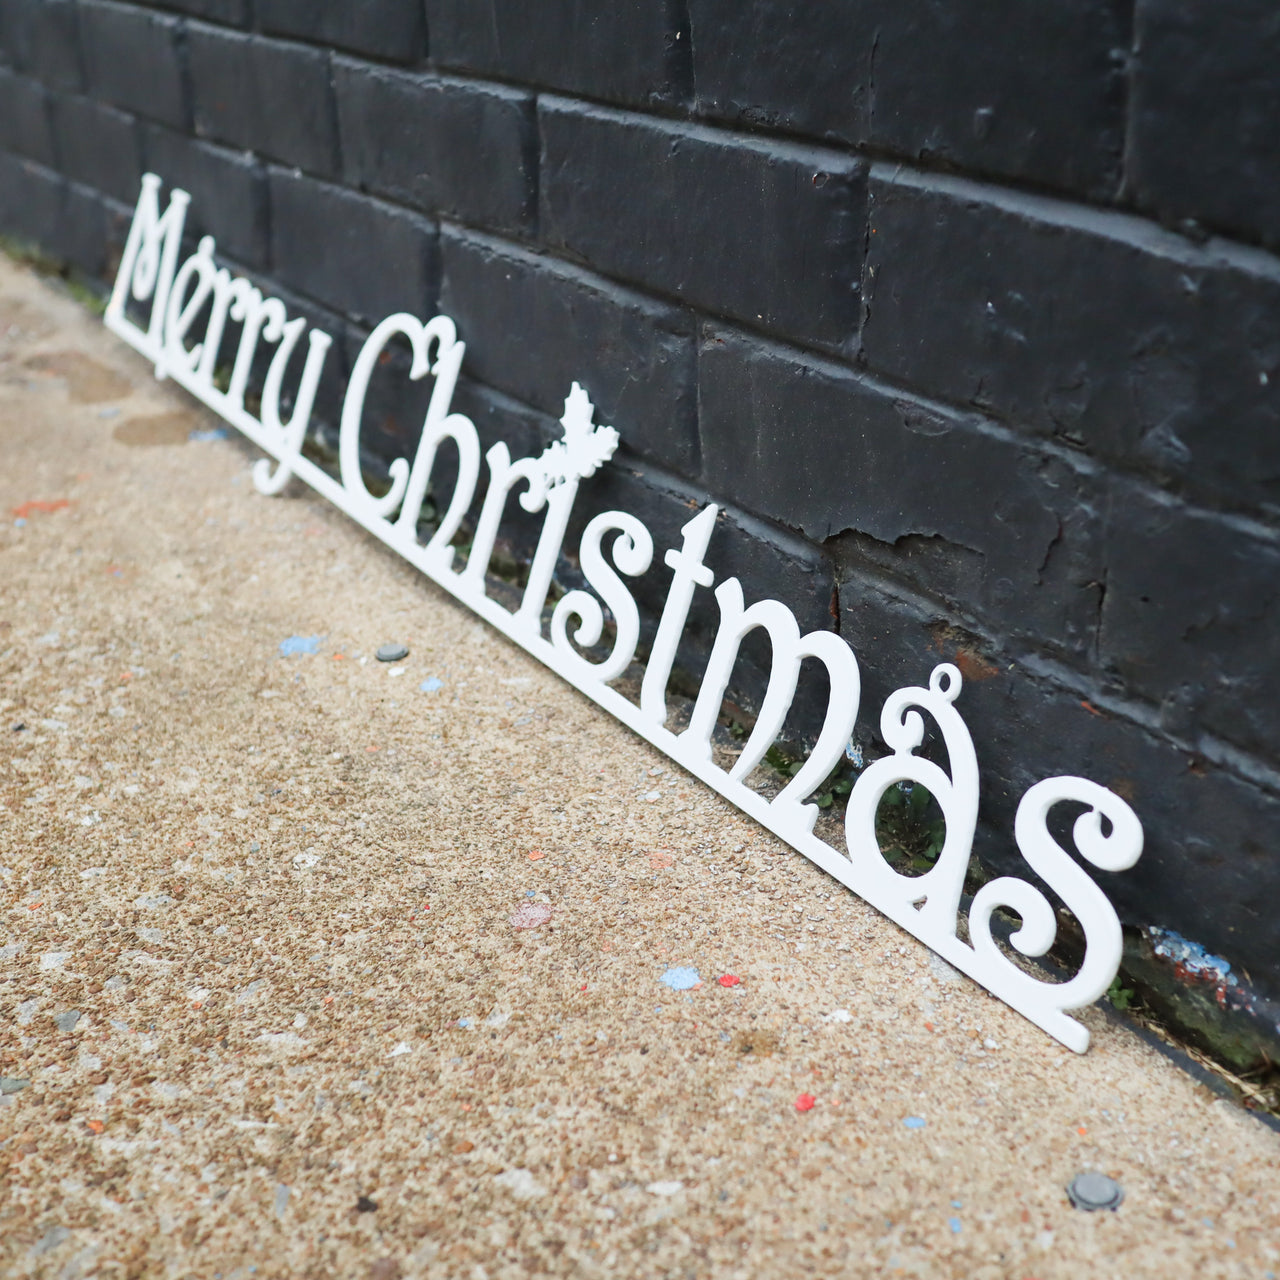 Merry Christmas Metal Sign - Holiday Wall Art Home Decor